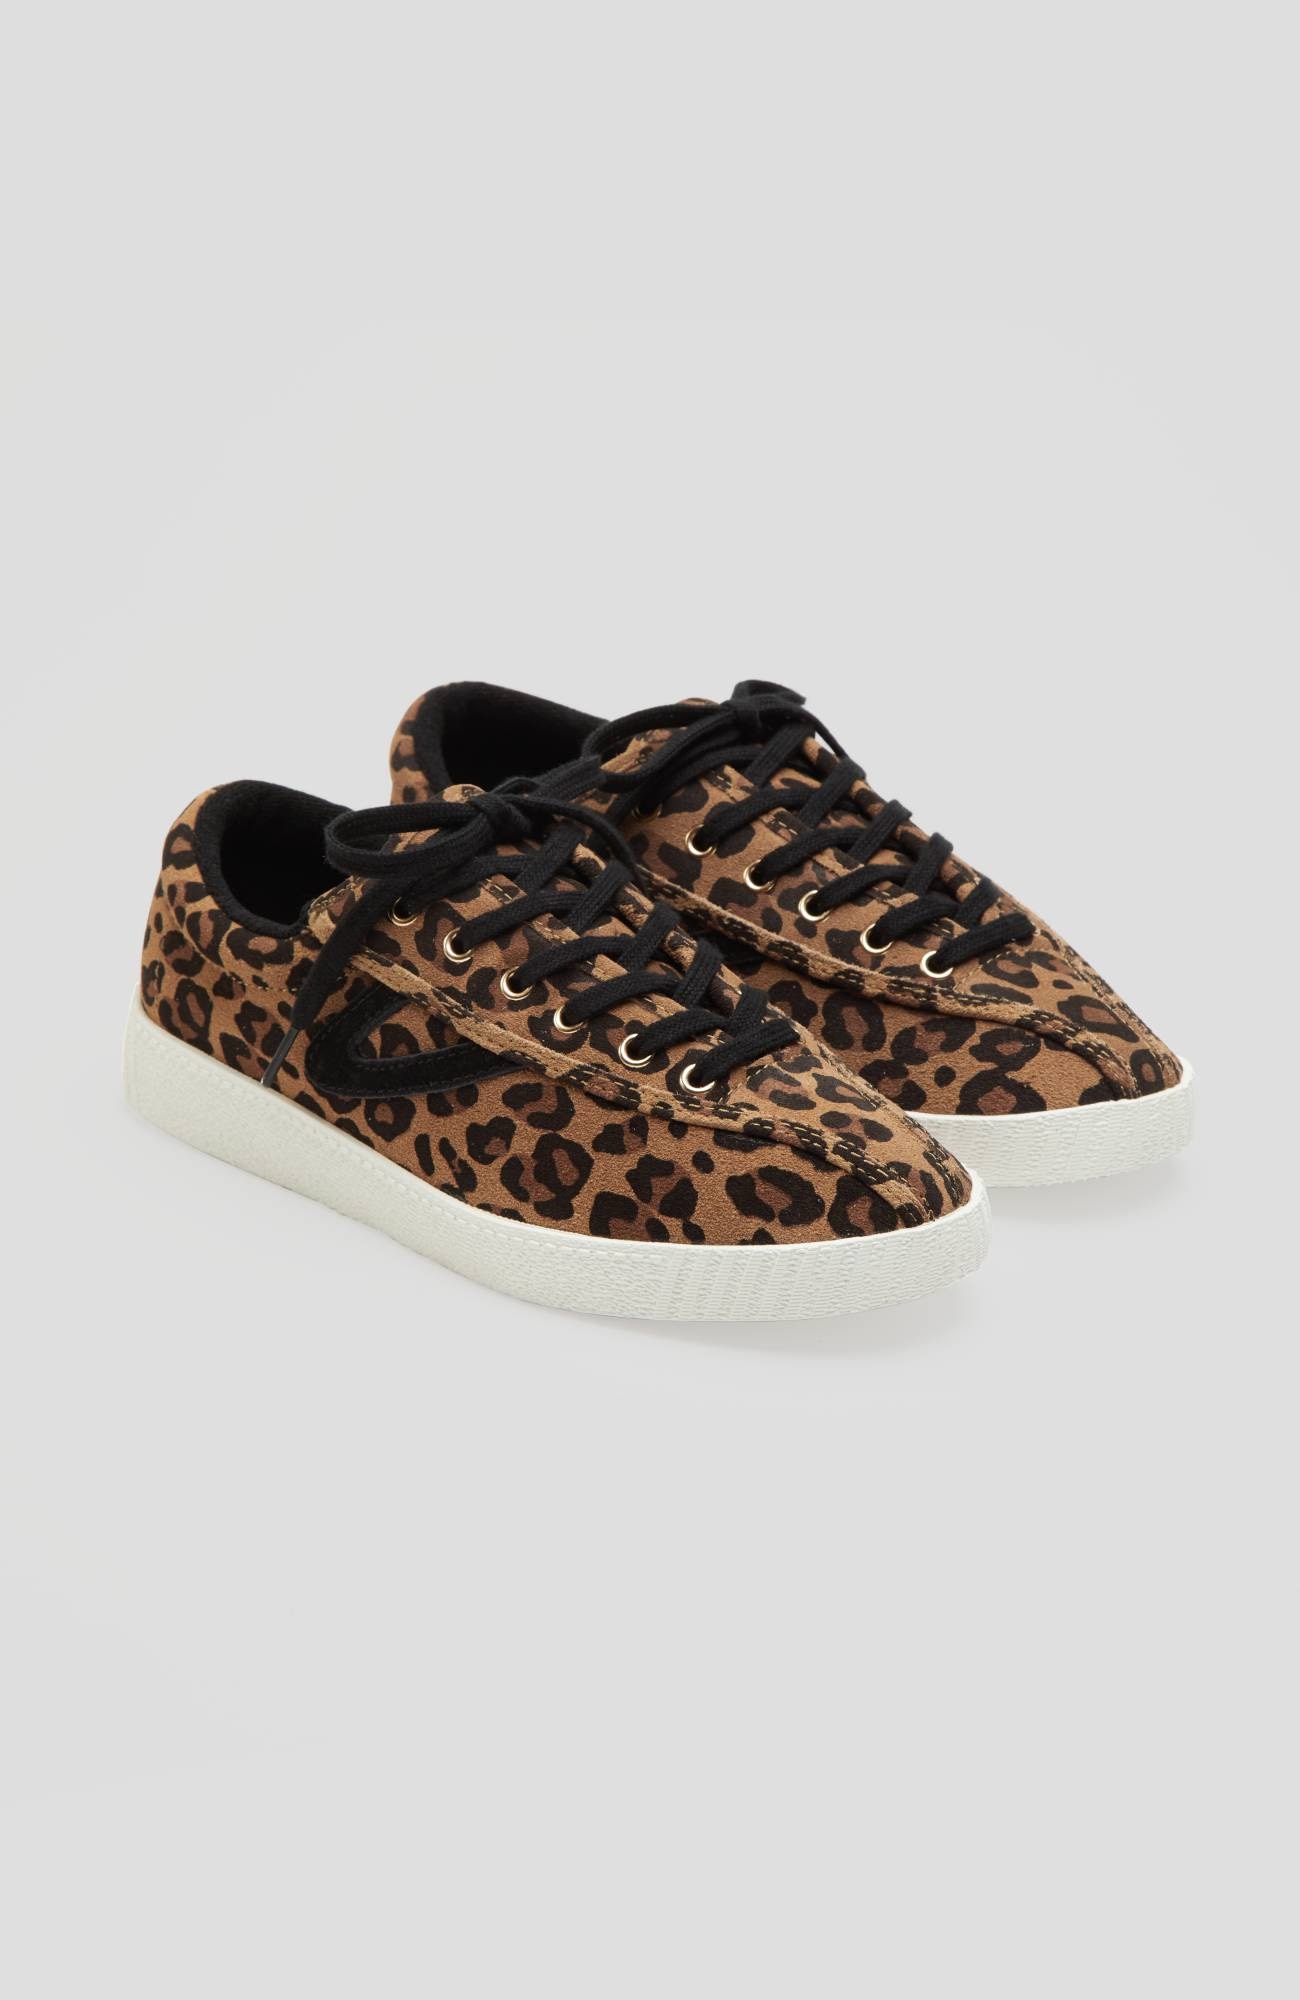 tretorn cheetah sneakers